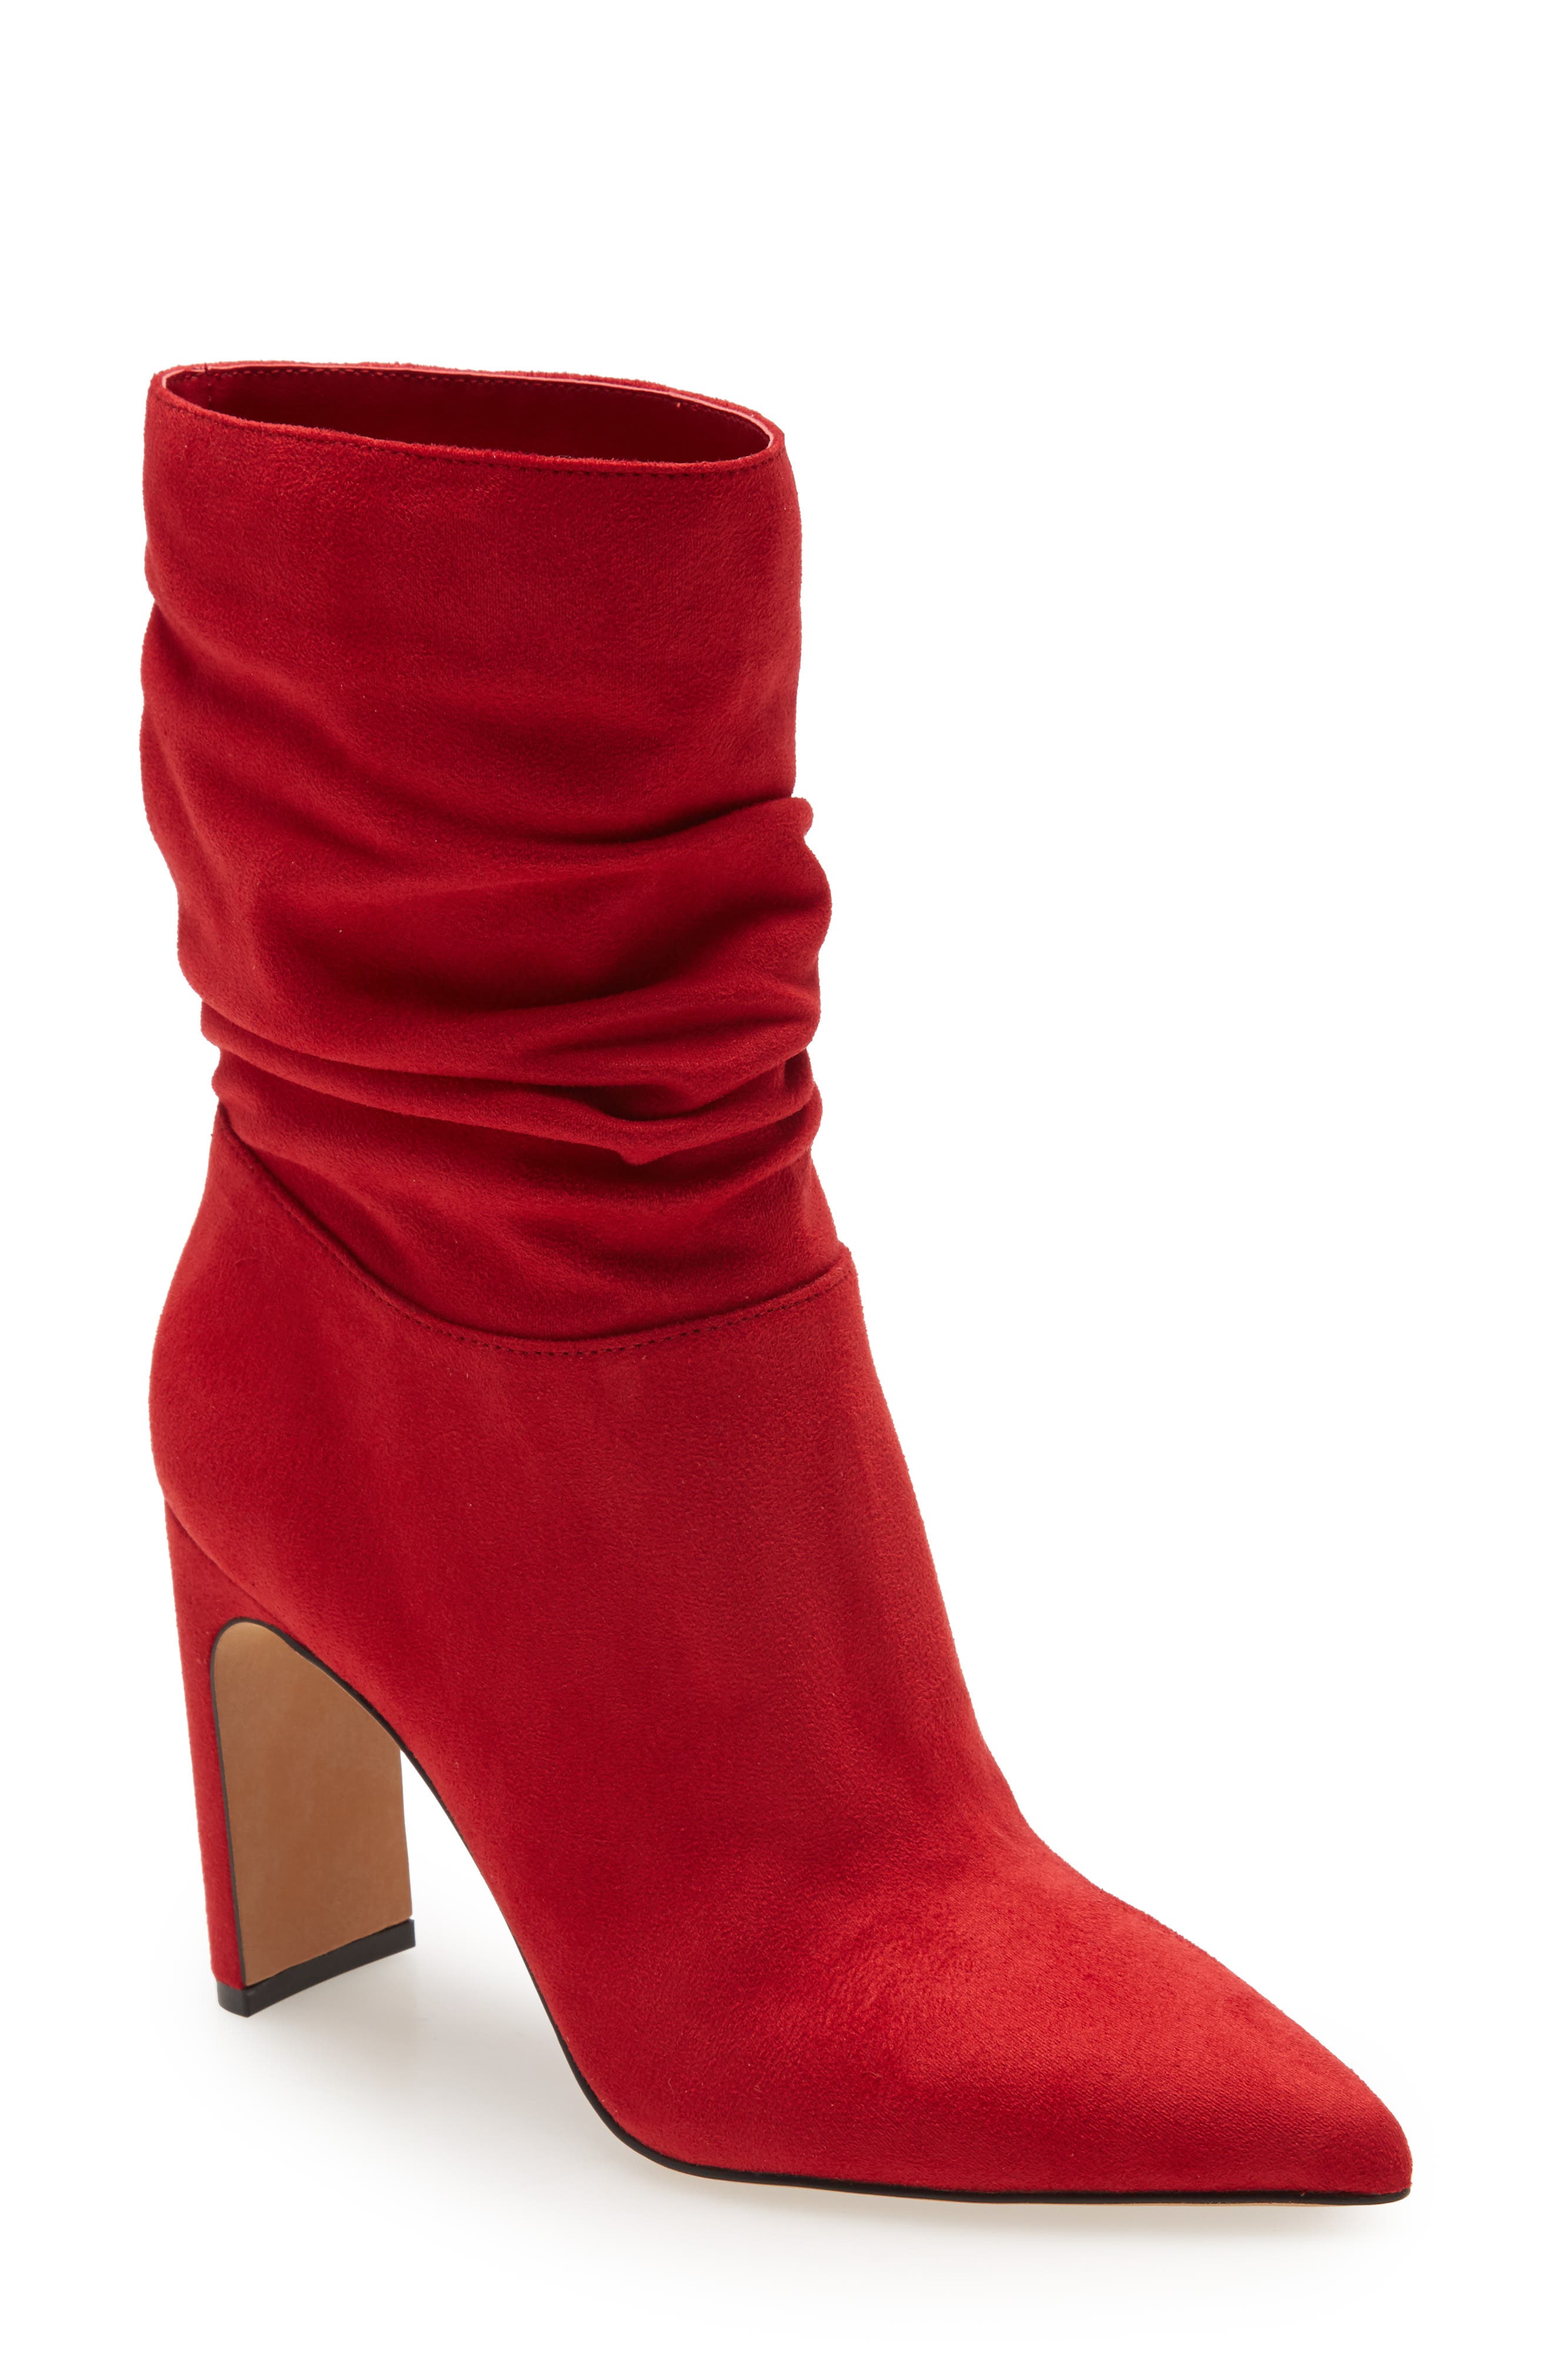 ladies red booties